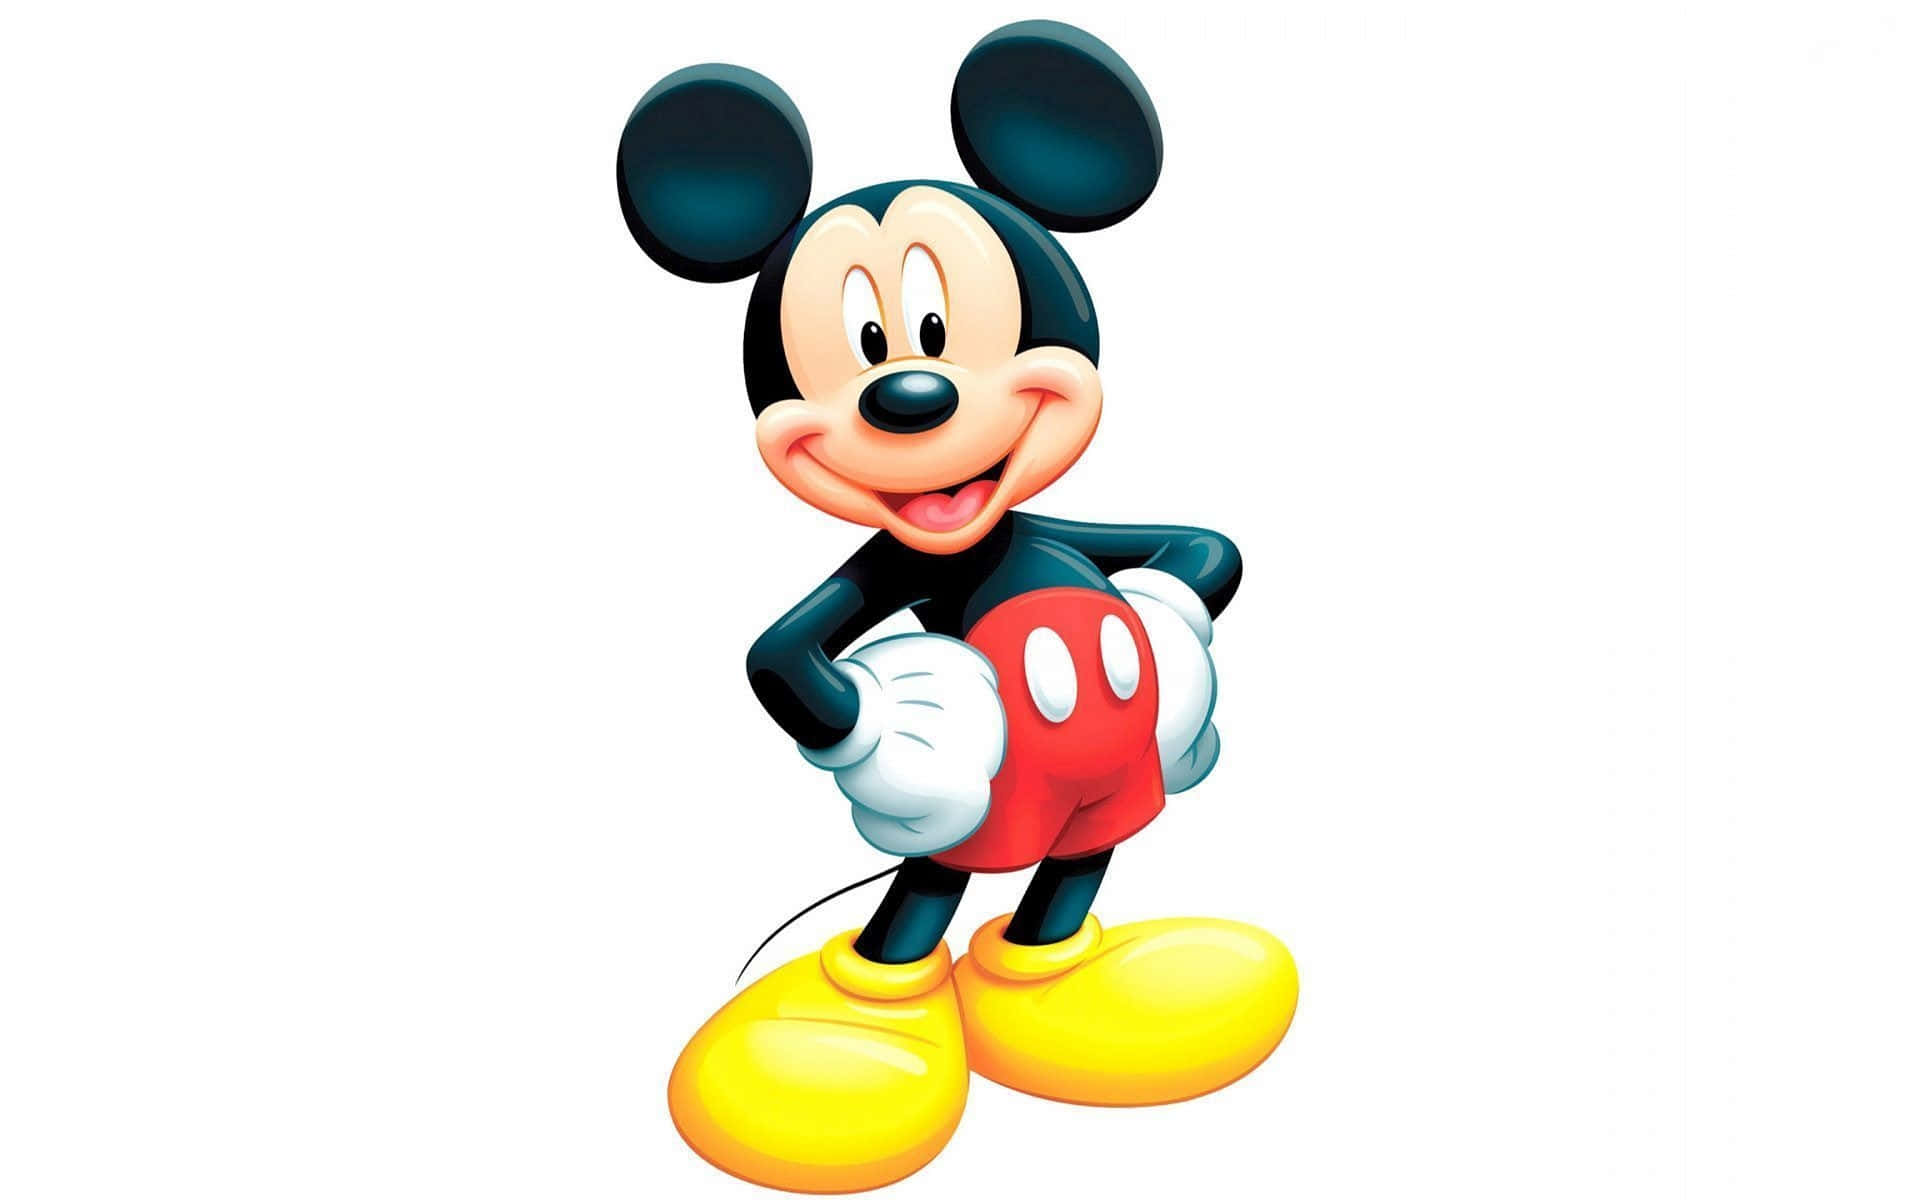 Etbillede Af En Sød Mickey Mouse I En Legende Stilling. Wallpaper